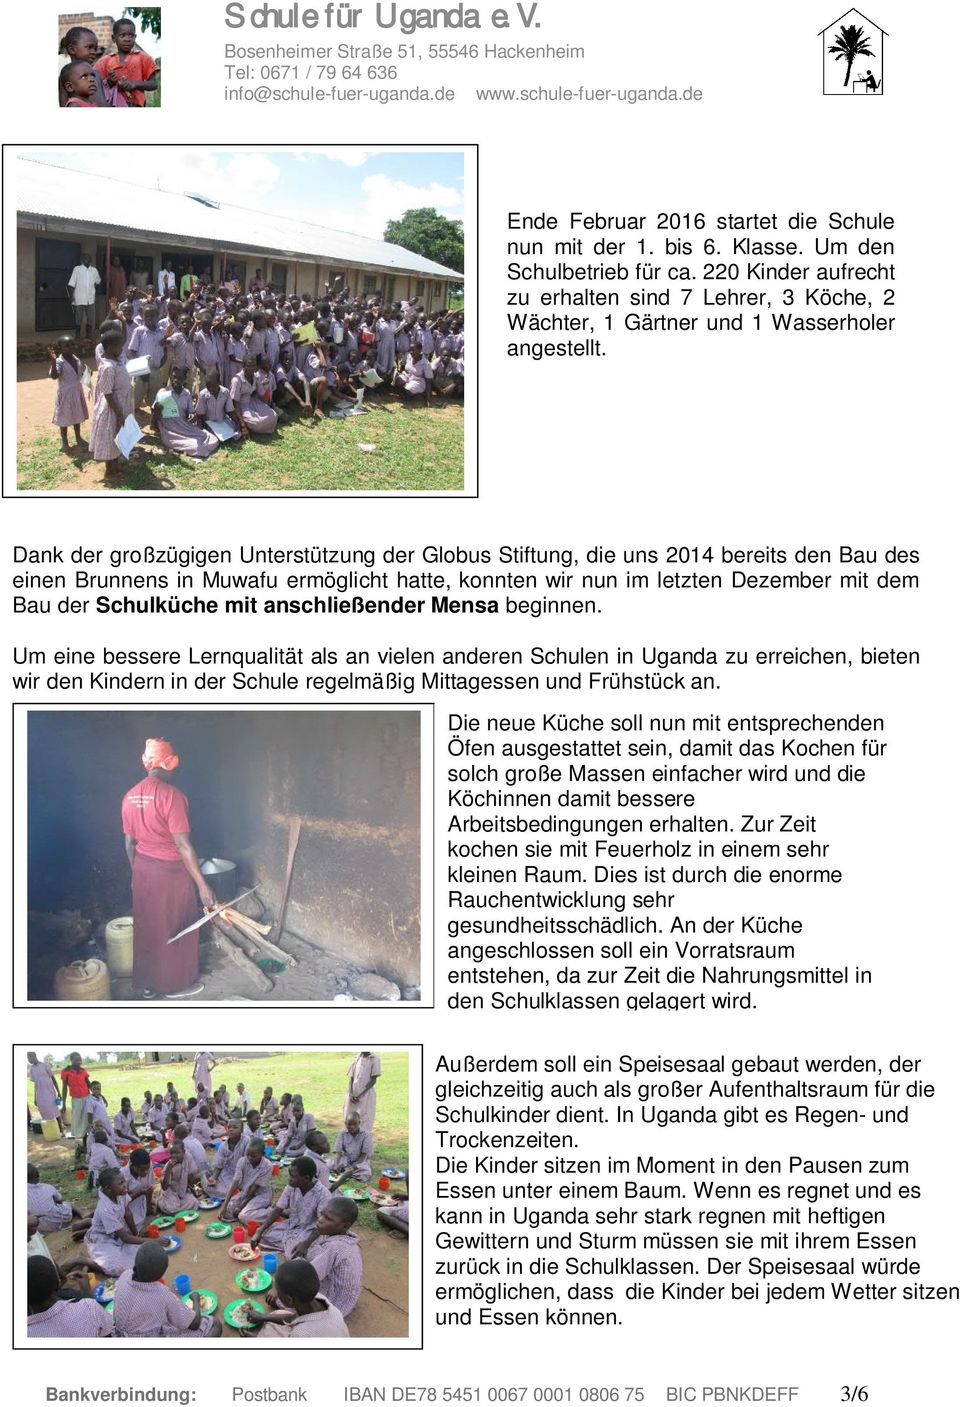 Dank der großzügigen Unterstützung der Globus Stiftung, die uns 2014 bereits den Bau des einen Brunnens in Muwafu ermöglicht hatte, konnten wir nun im letzten Dezember mit dem Bau der Schulküche mit